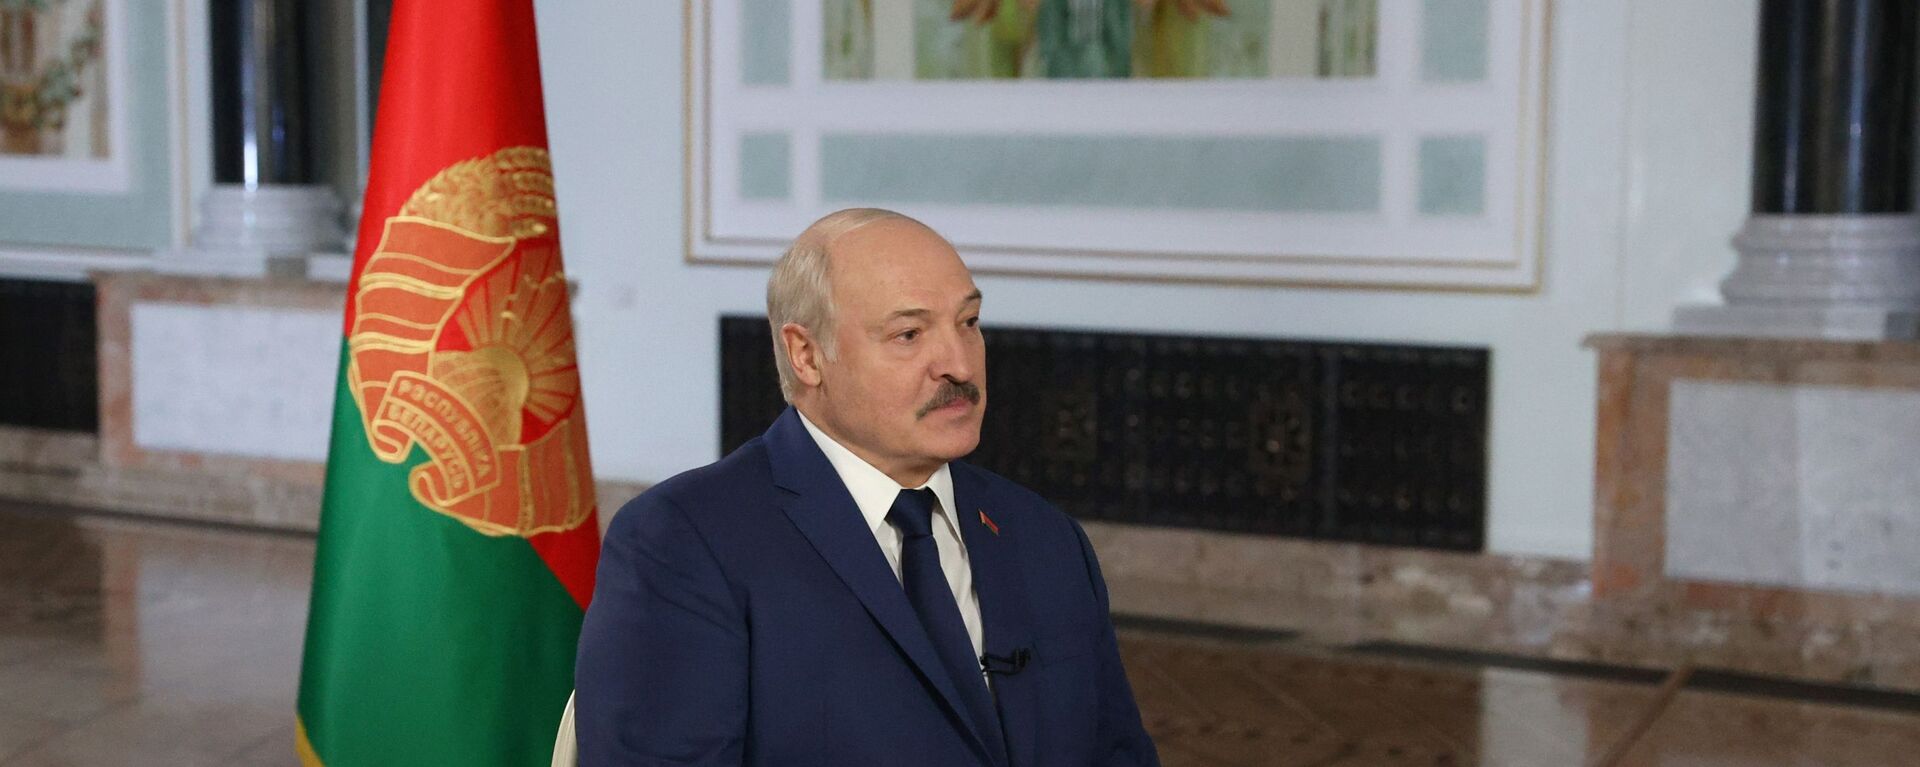 Alexander Lukashenko trong một cuộc phỏng vấn với Dmitry Kiselev - Sputnik Việt Nam, 1920, 01.12.2021